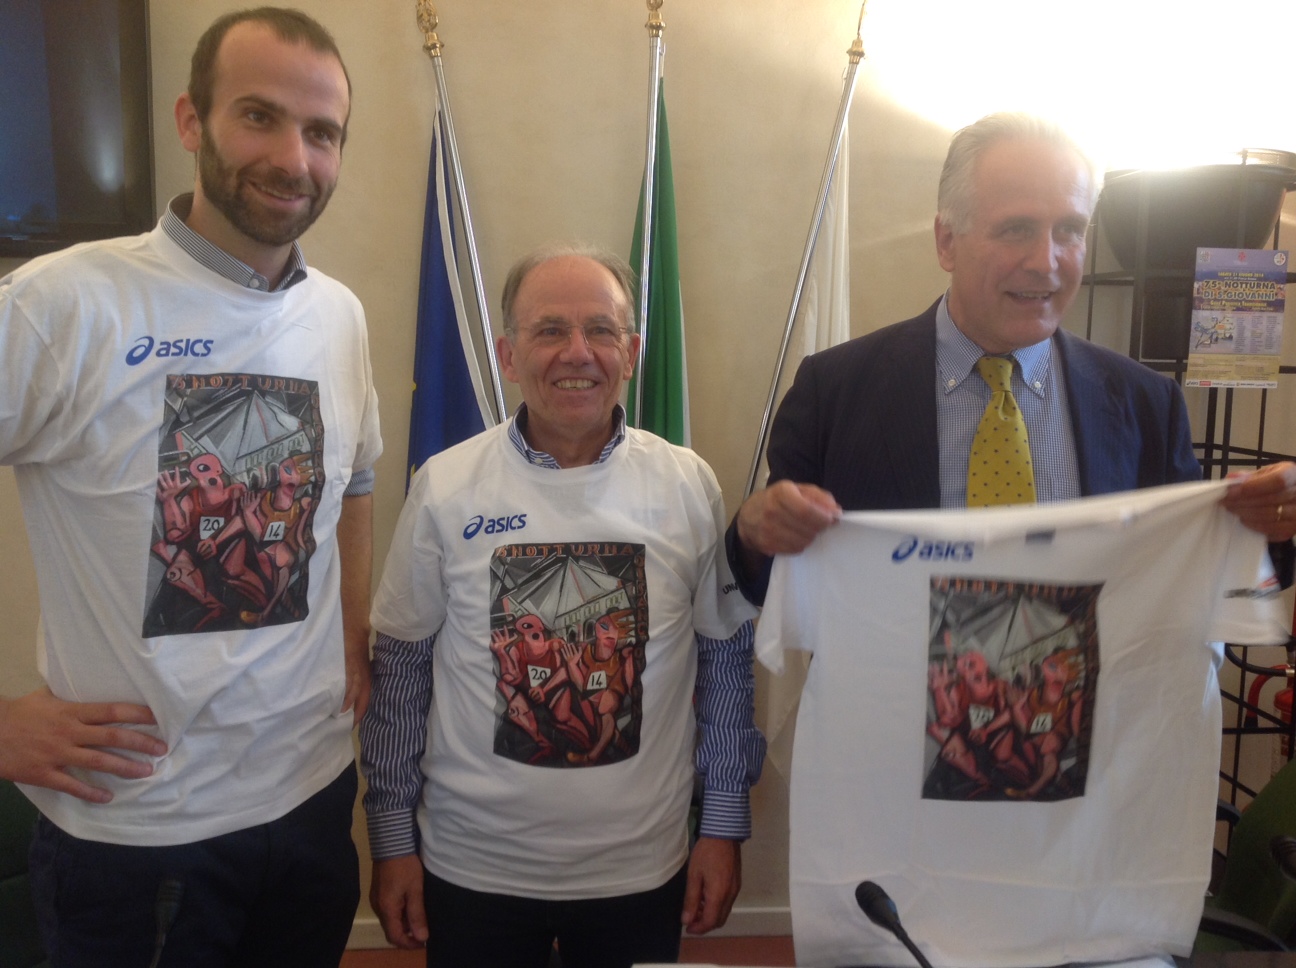  Nella foto, da sinistra: l'assessore Vannucci, Romiti e Giani che indossano le maglie ufficiali dell'evento oggi durante la presentazione ufficiale